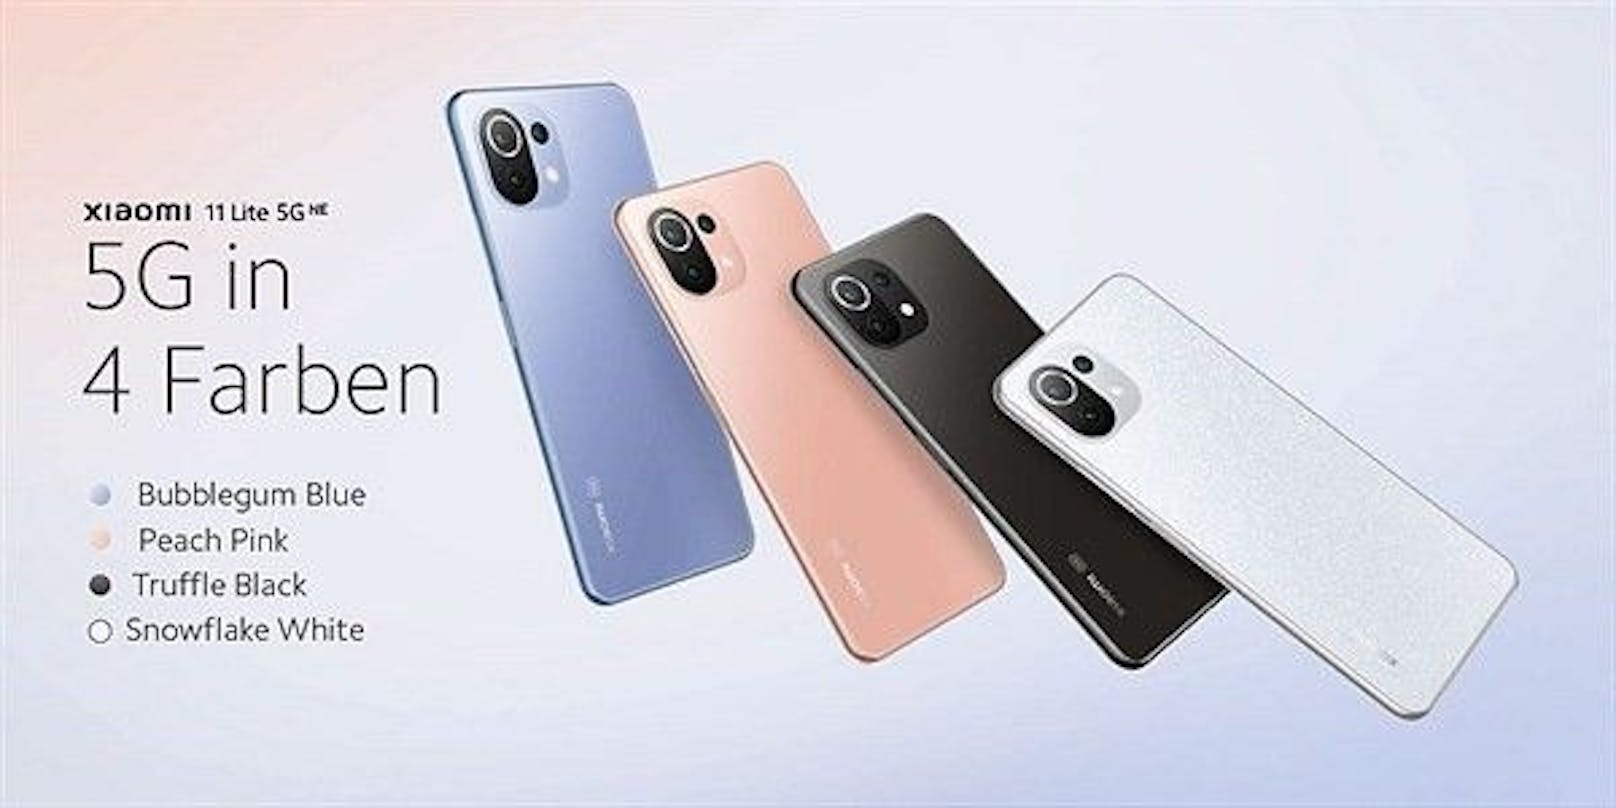 "Xiaomi revolutioniert Smartphone-Fotografie und Videografie, indem es eine Reihe innovativer 'Cinemagic'-Funktionen bei den beiden Smartphones anbietet", heißt es vom Unternehmen.&nbsp;